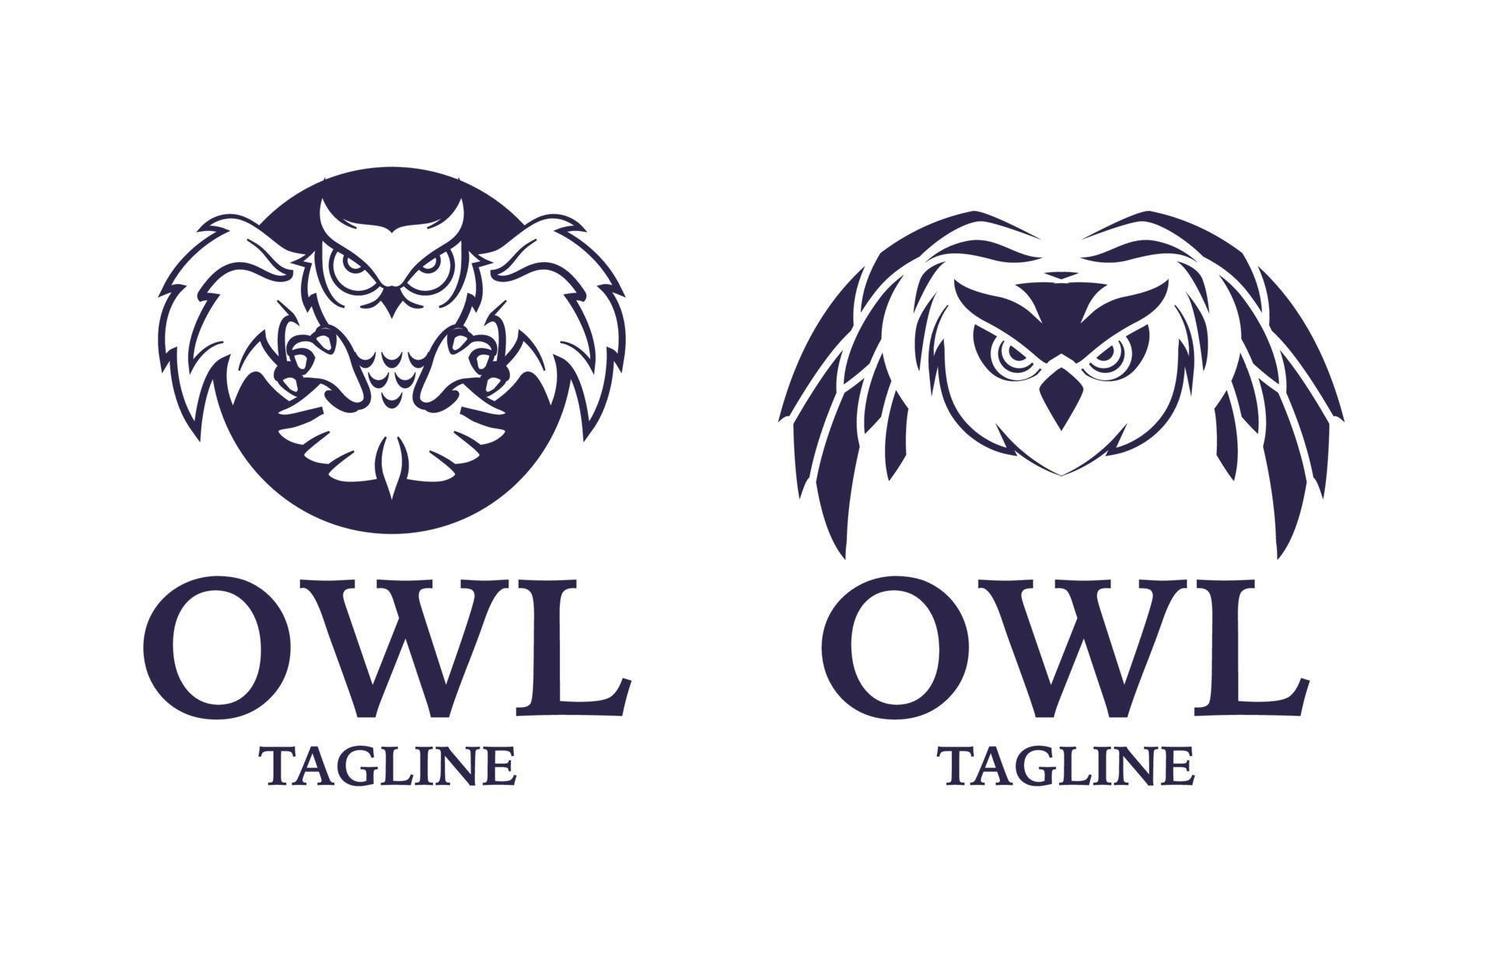 Owl bird logo, education owl, wise owl logo design vector